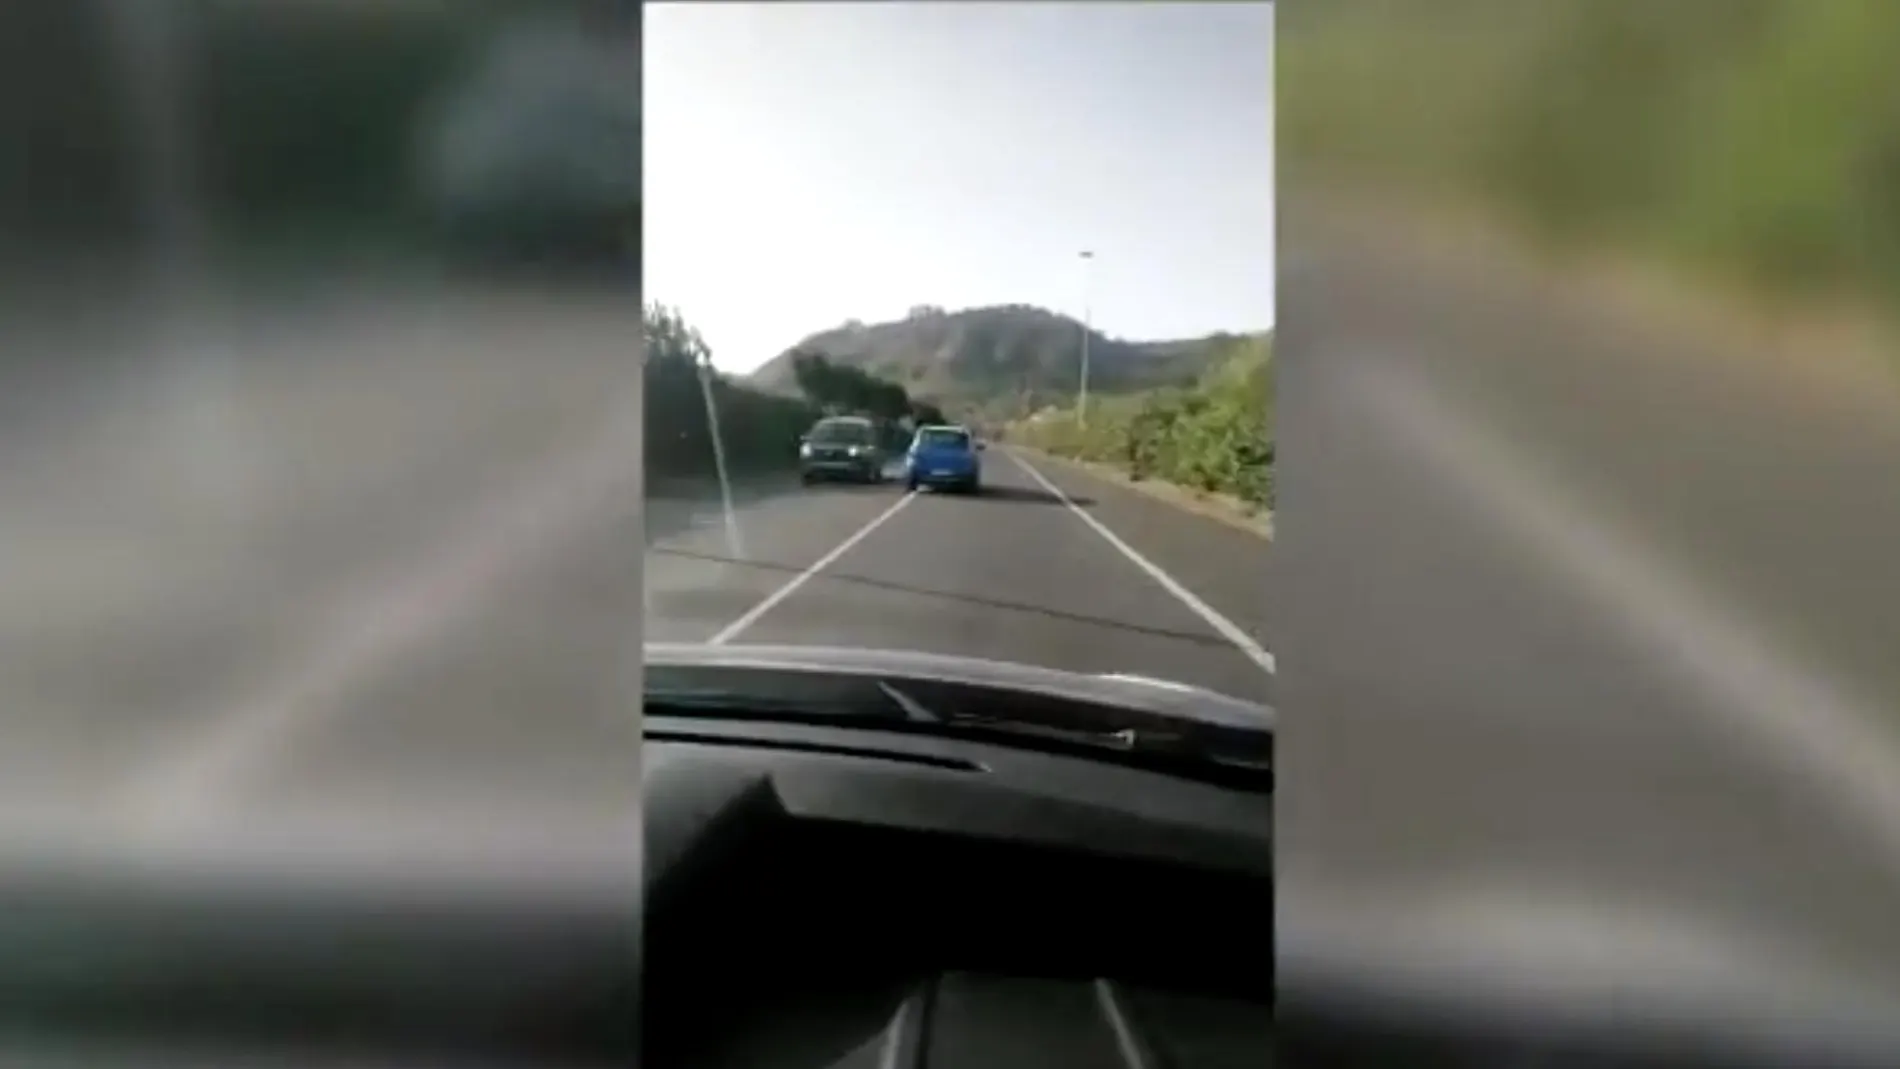 Gracias al vídeo publicado en las redes sociales se pudo relacionar un accidente con un delito de conducción temeraria.